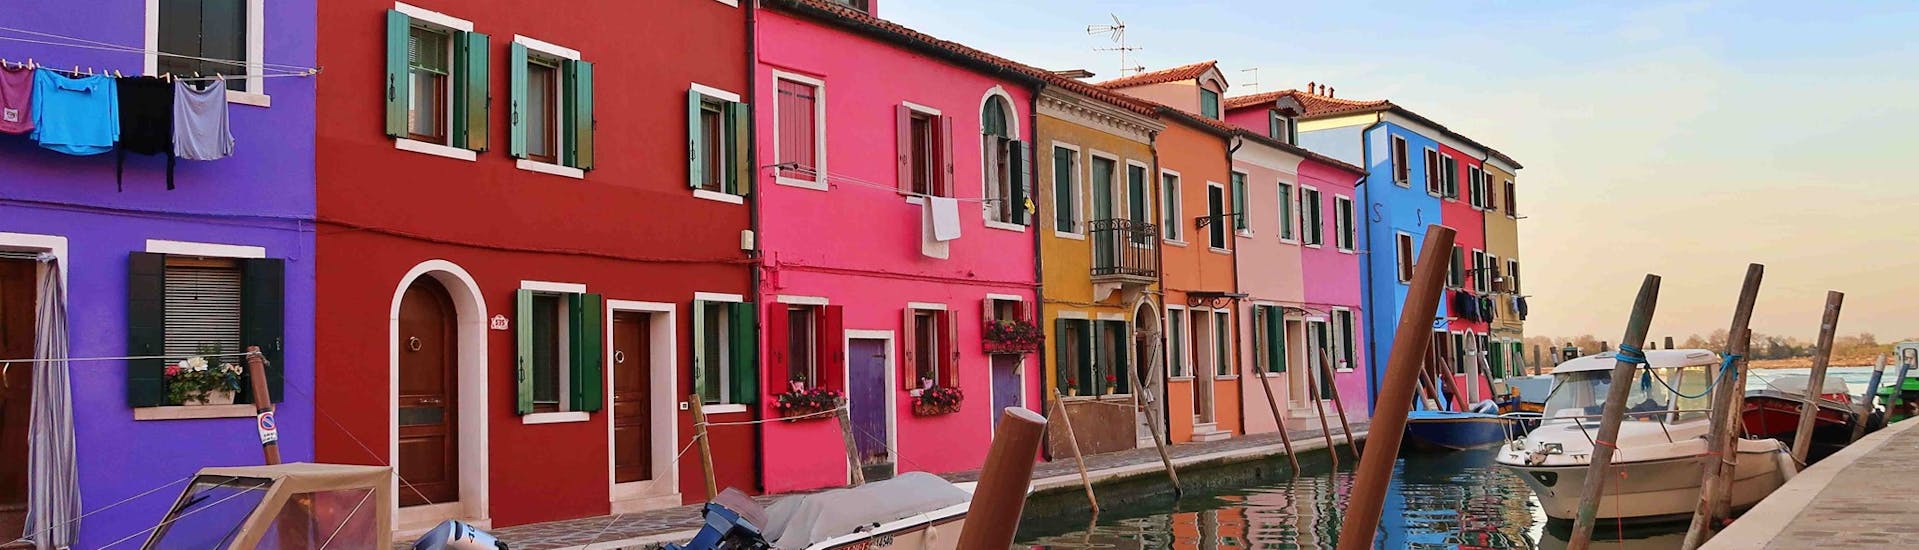 Ein Foto der bunten Häuser in Burano, aufgenommen während der Bootstour von Punta Sabbioni nach Murano, Burano & Torcello mit Il Doge di Venezia.